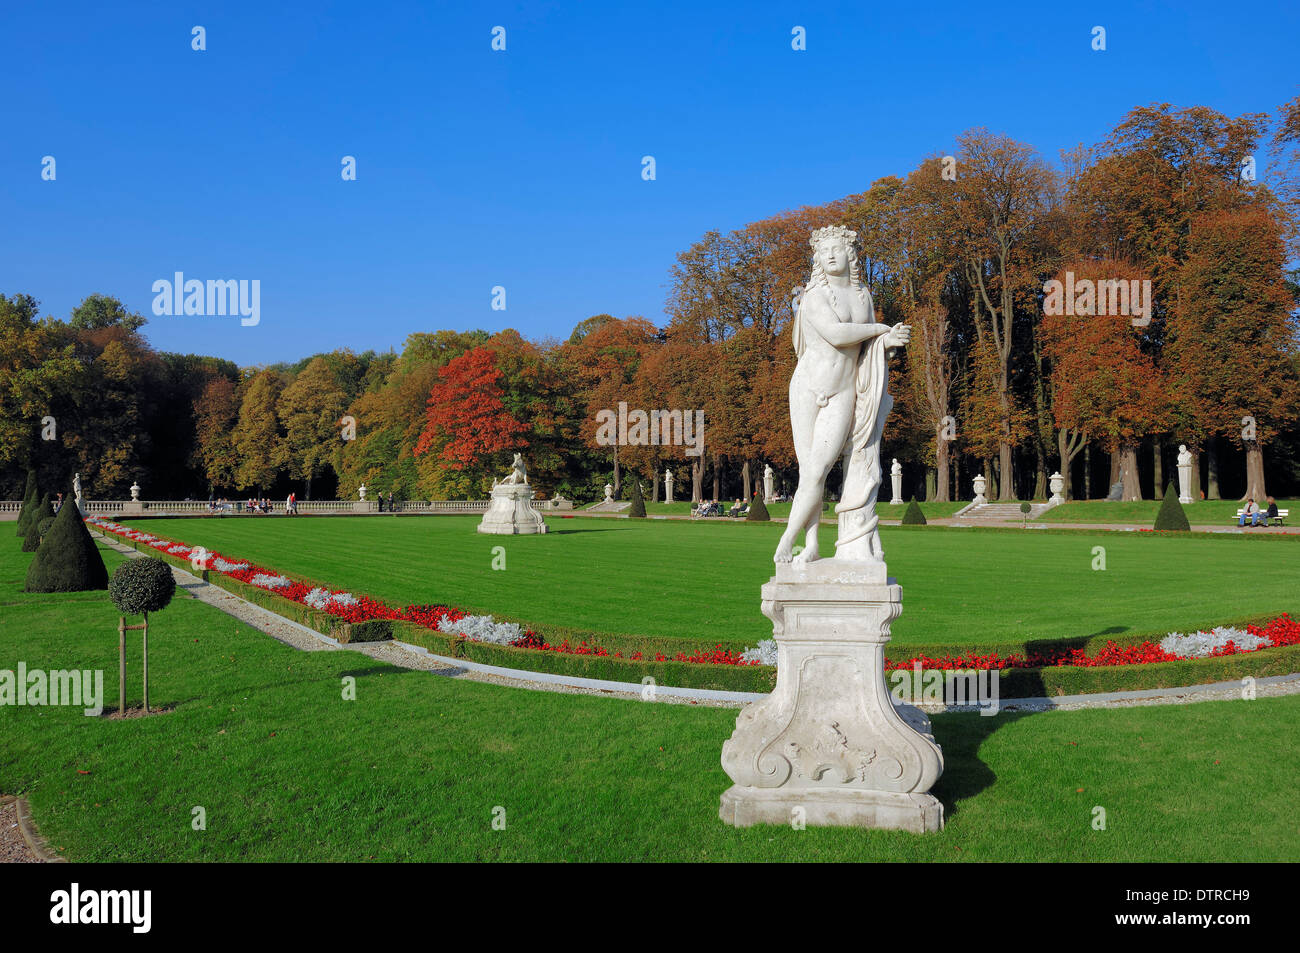 Statua nel giardino del castello barocco Castello moated Nordkirchen, Munsterland, Nord Reno-Westfalia, Germania Foto Stock